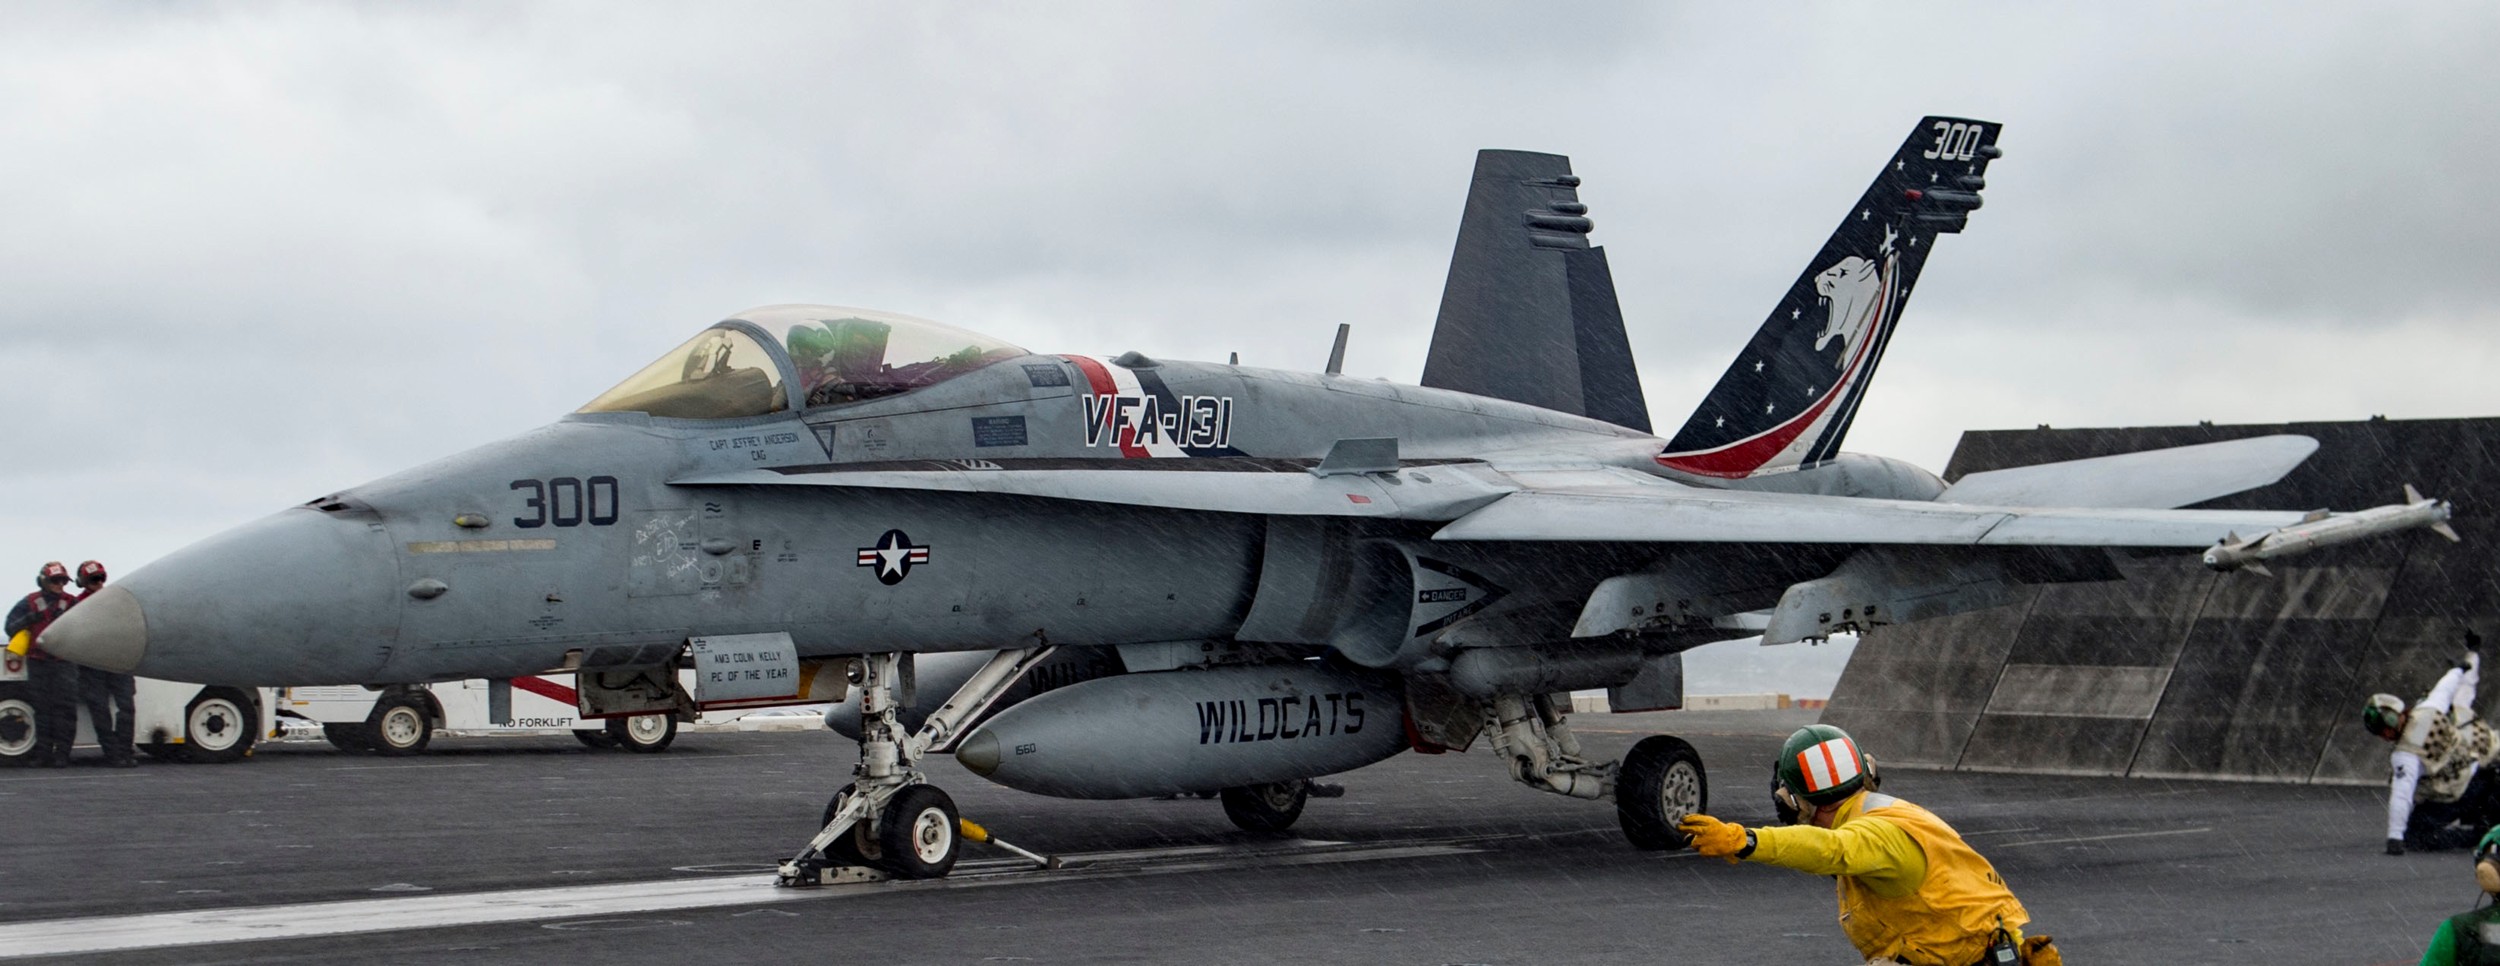 vfa-131 wildcats strike fighter squadron f/a-18c hornet cvw-3 uss dwight d. eisenhower cvn-69 2015 38